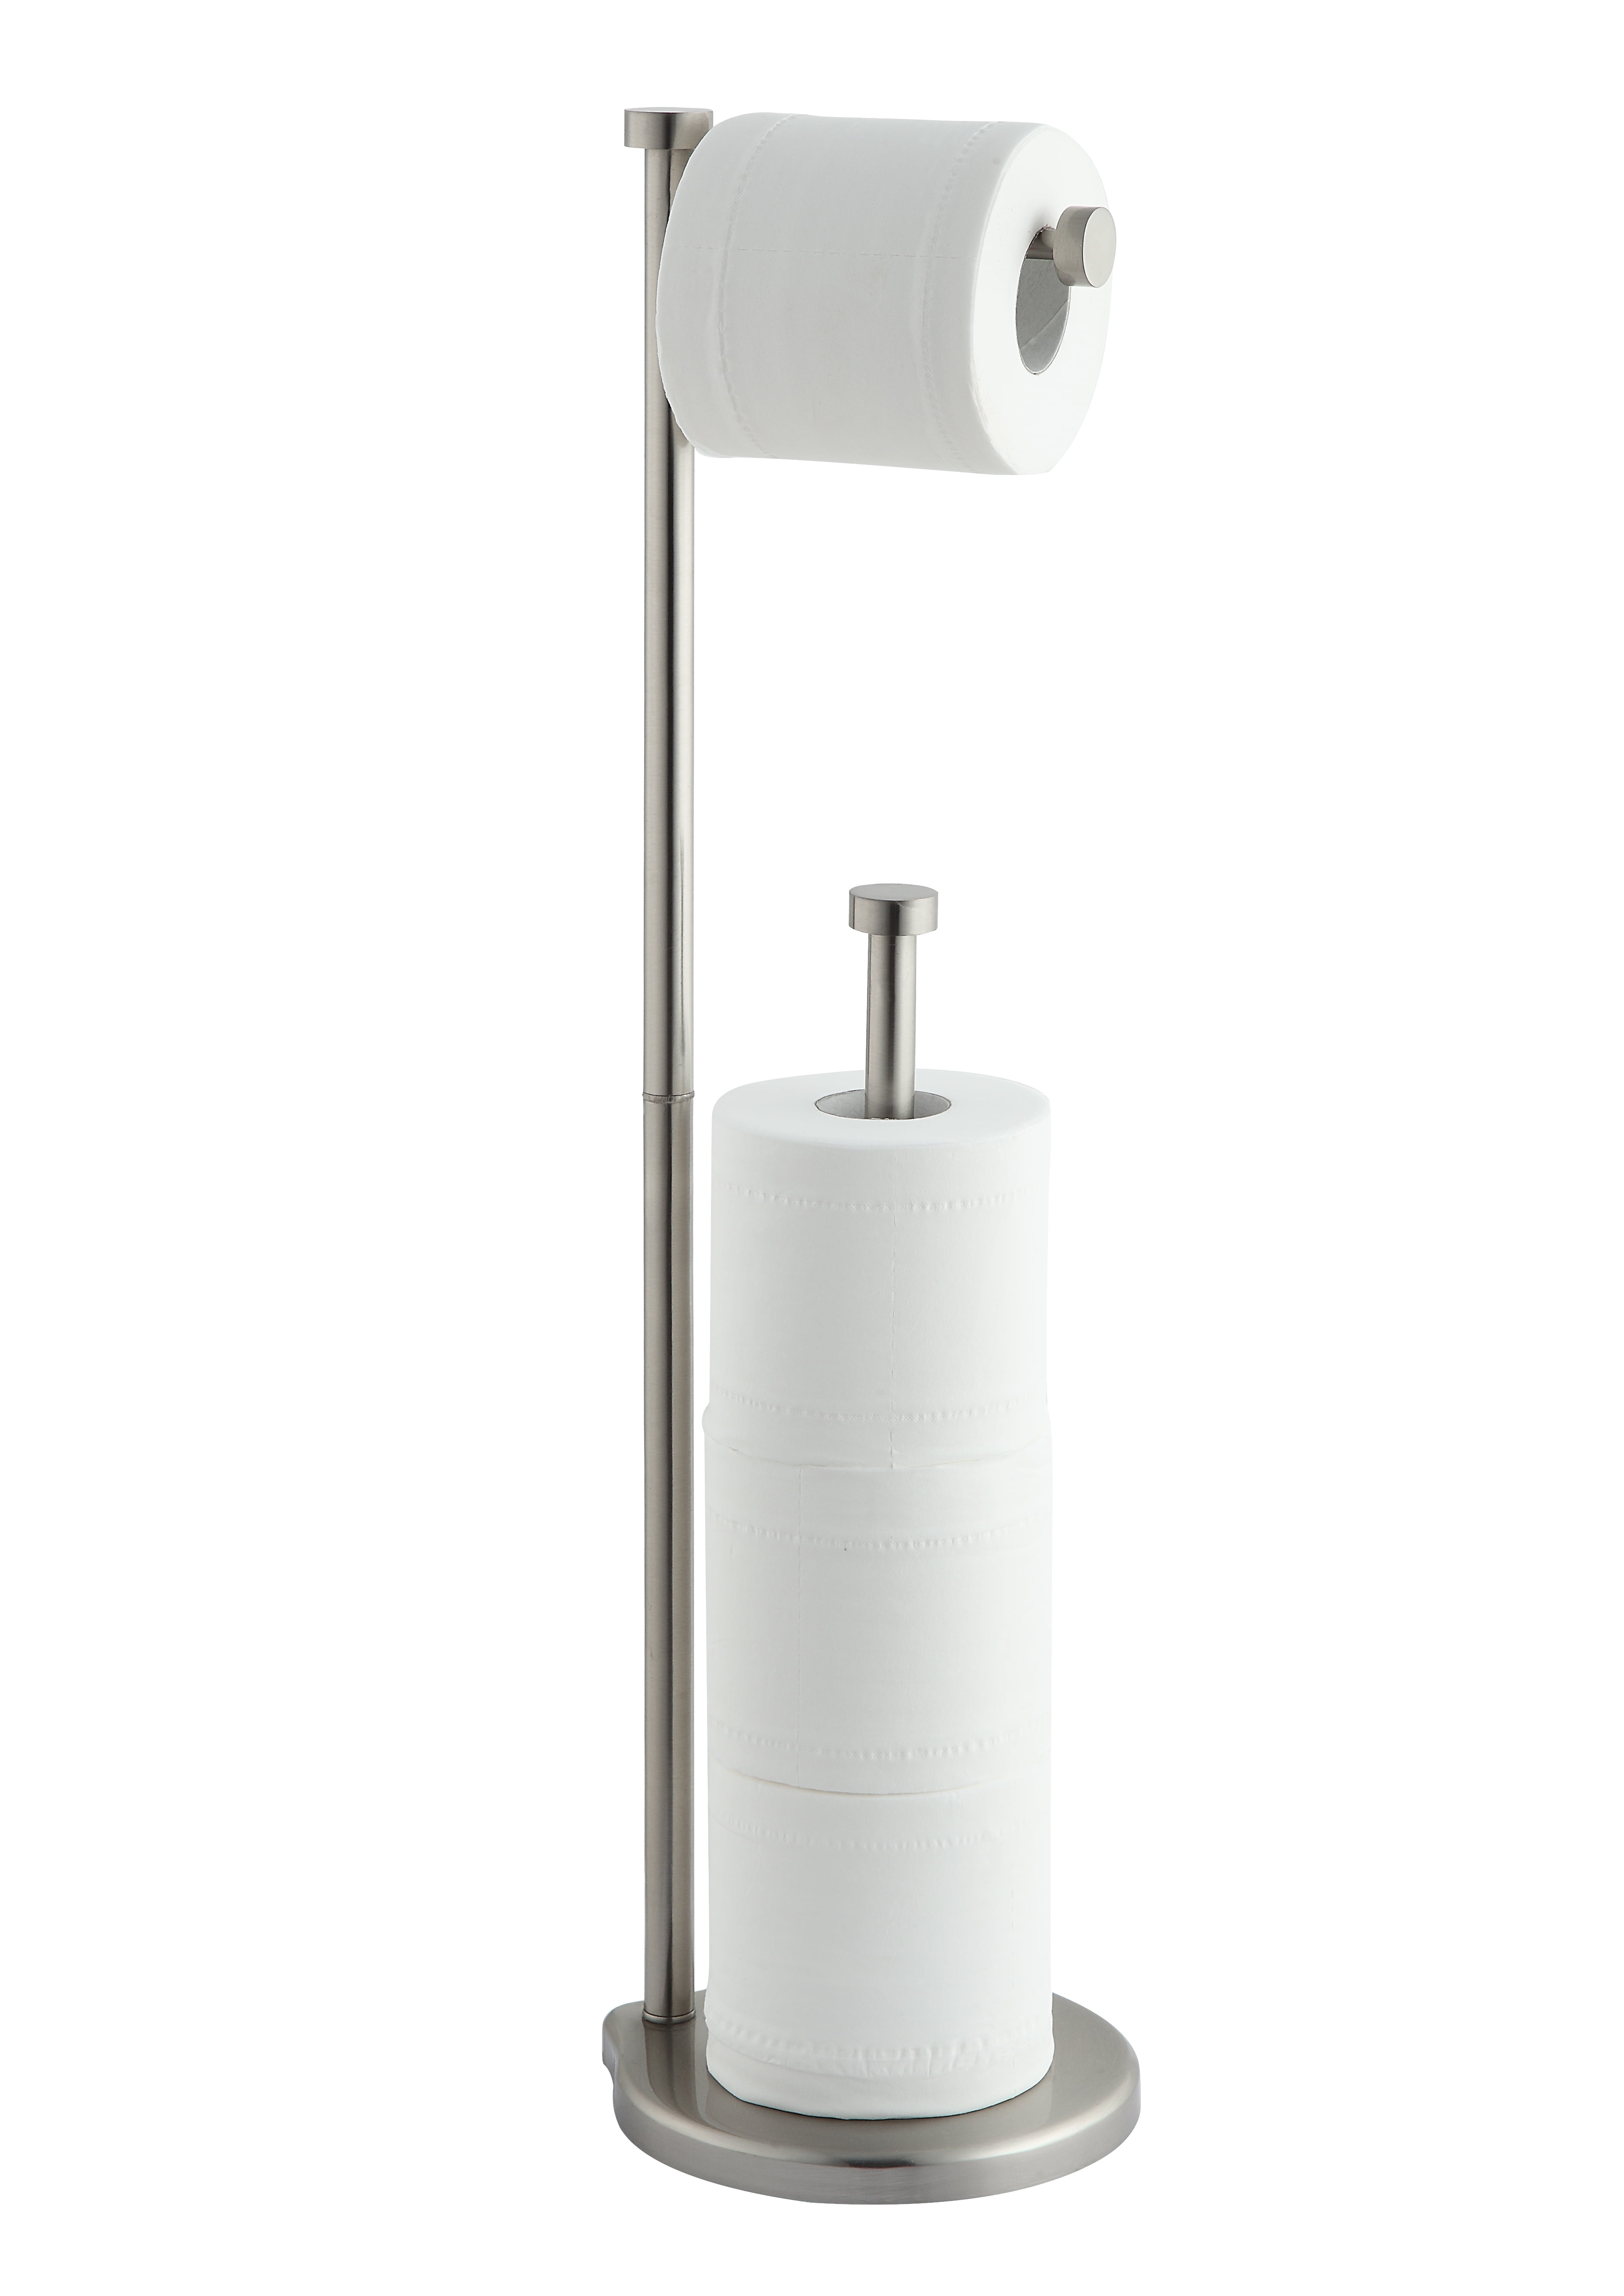 Free Standing Toilet Paper Roll Holder For Bathroom InterDesign Kent Bathware 